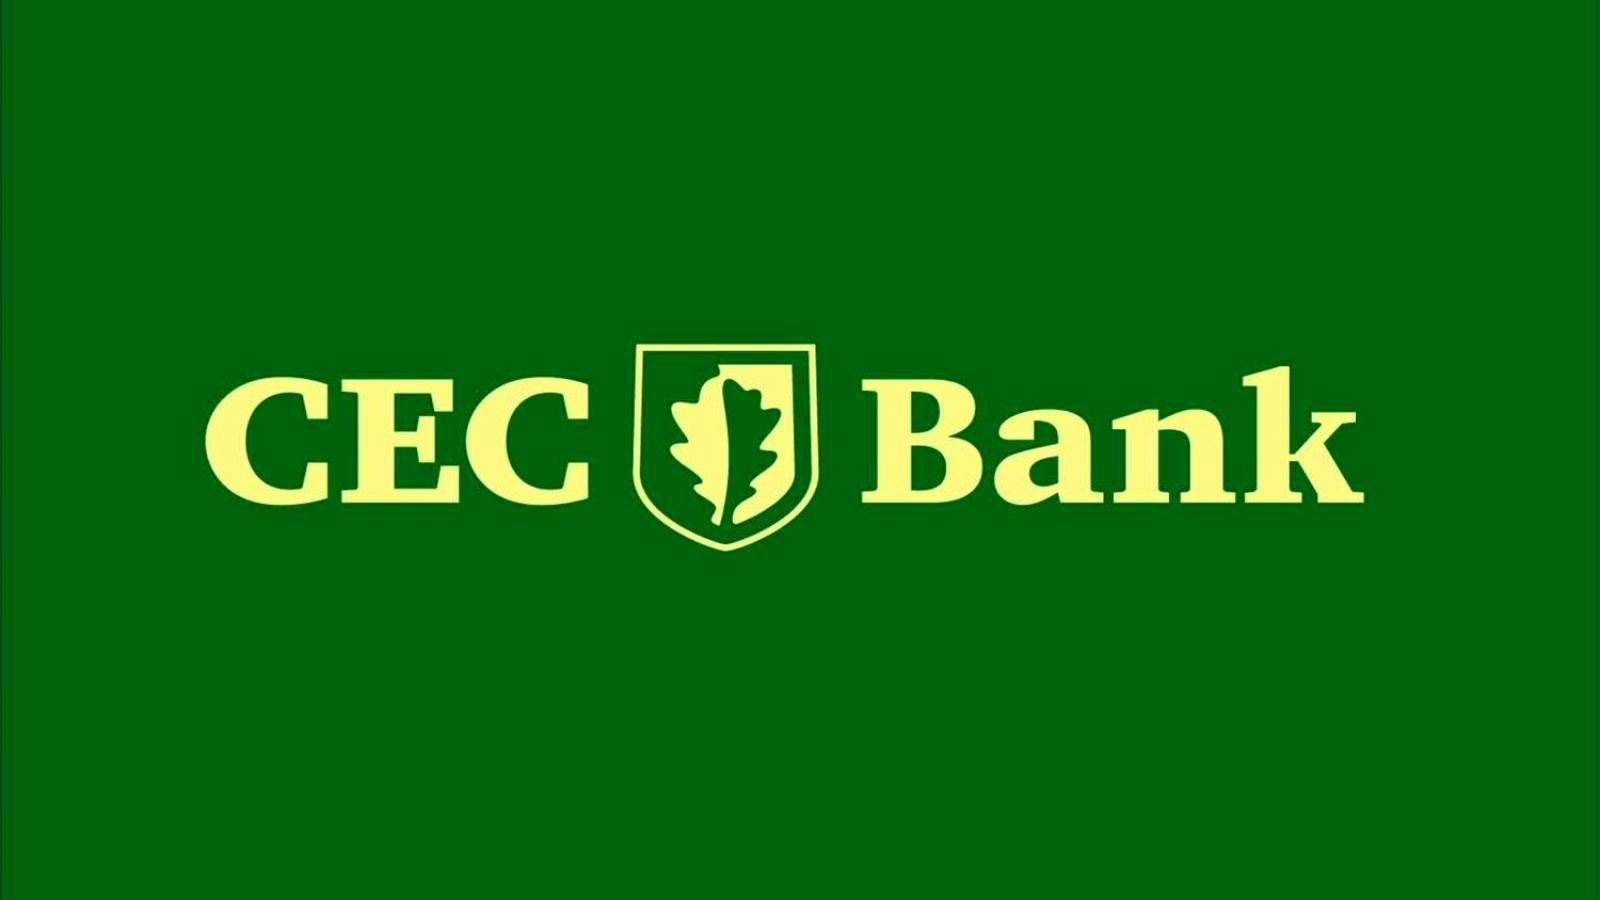 Informations IMPORTANTES de la banque CEC AVERTISSEMENT émis aux clients roumains